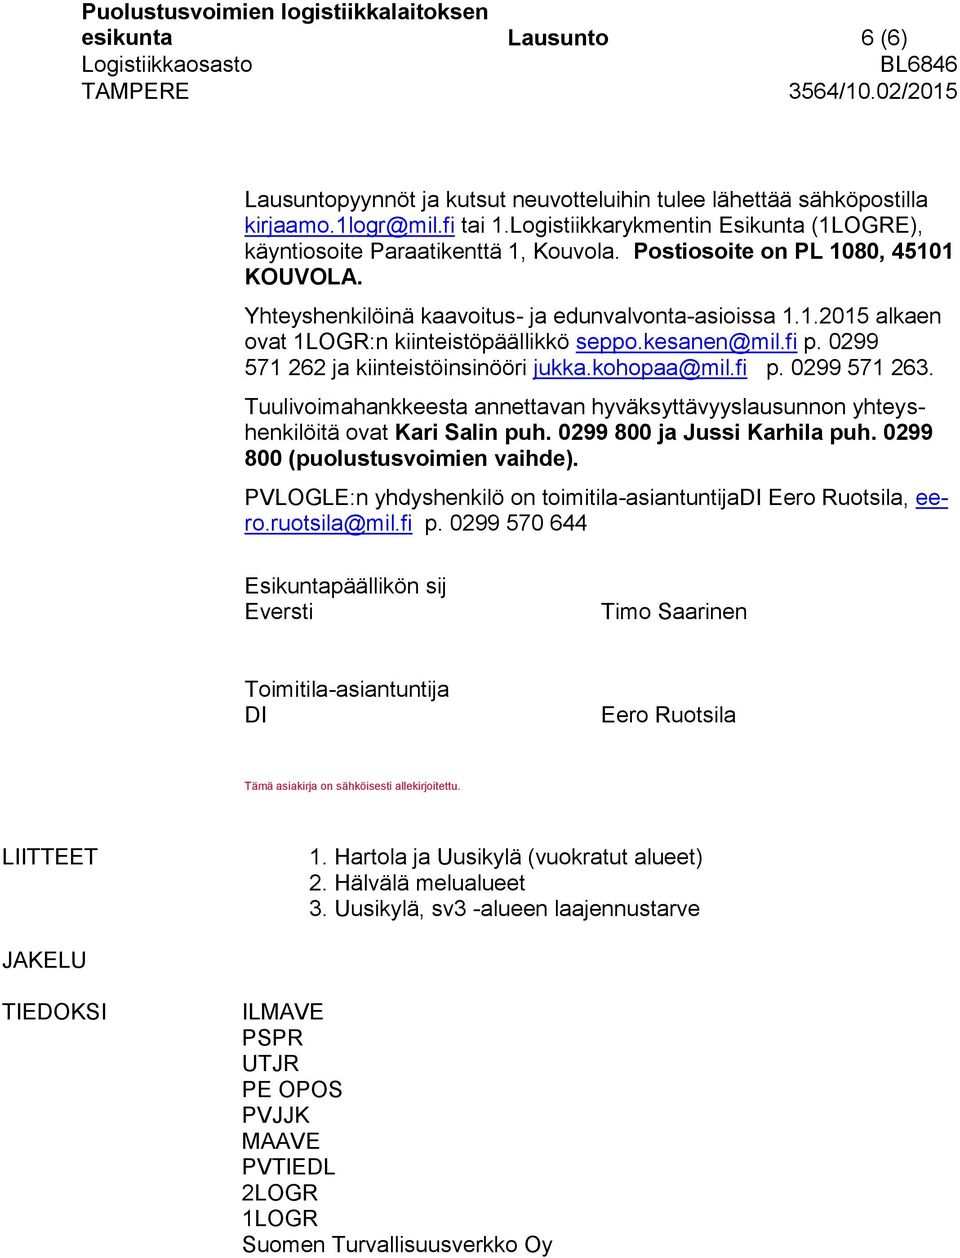 kesanen@mil.fi p. 0299 571 262 ja kiinteistöinsinööri jukka.kohopaa@mil.fi p. 0299 571 263. Tuulivoimahankkeesta annettavan hyväksyttävyyslausunnon yhteyshenkilöitä ovat Kari Salin puh.